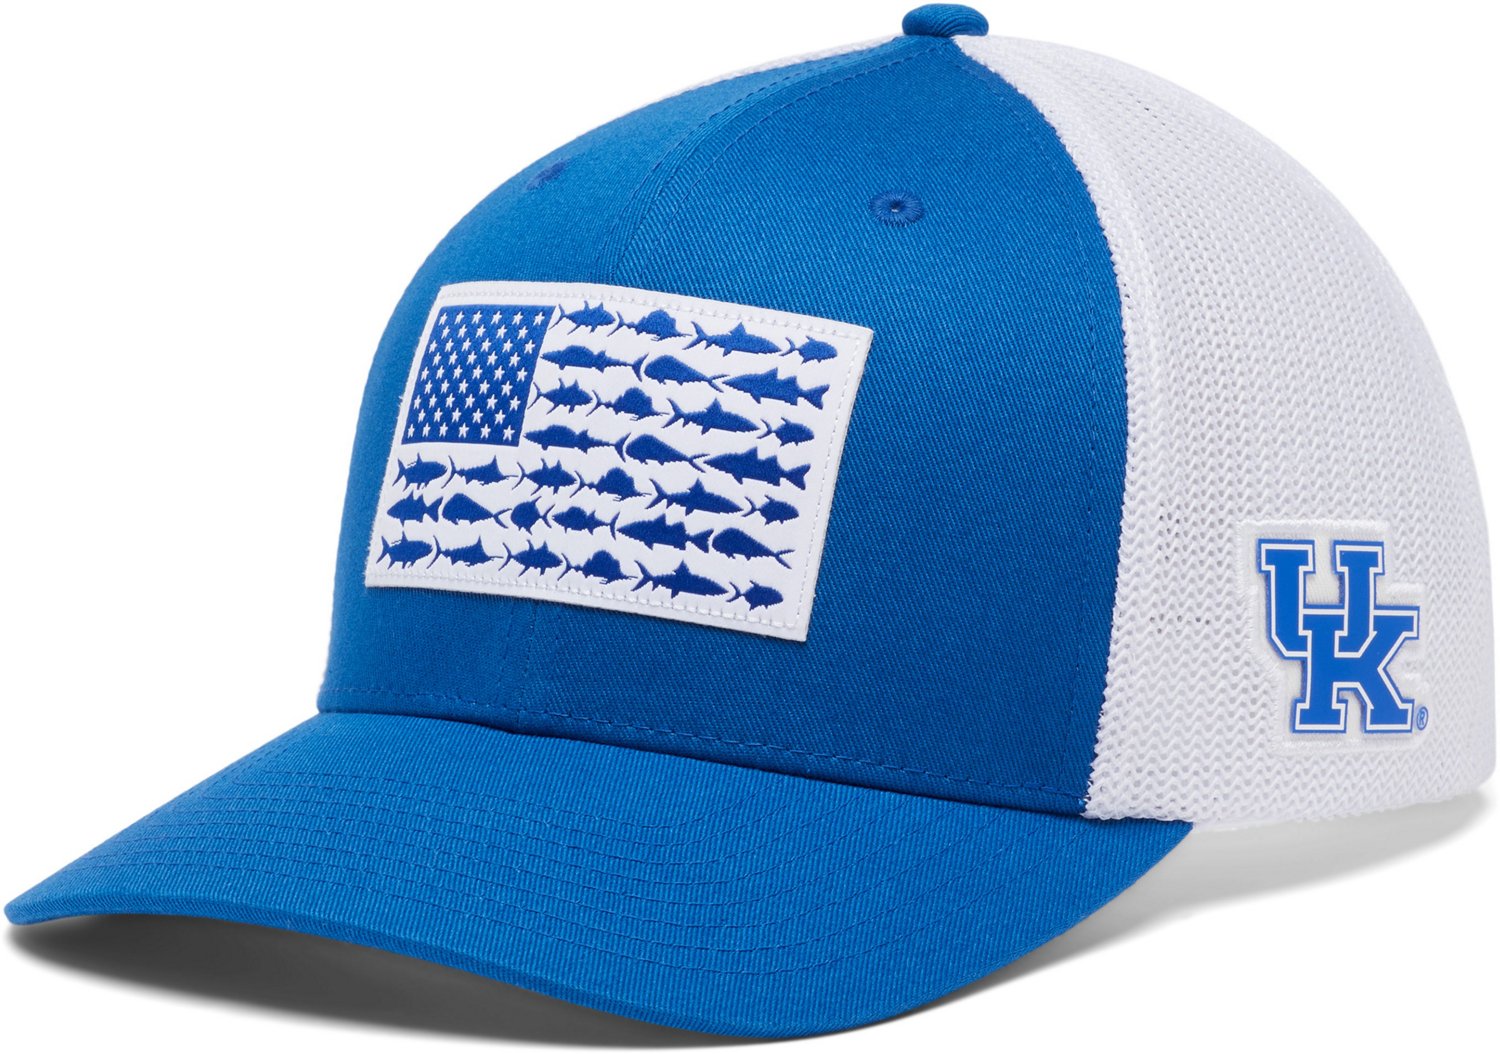 Youth Columbia Navy Dallas Cowboys PFG Mesh Snapback Hat